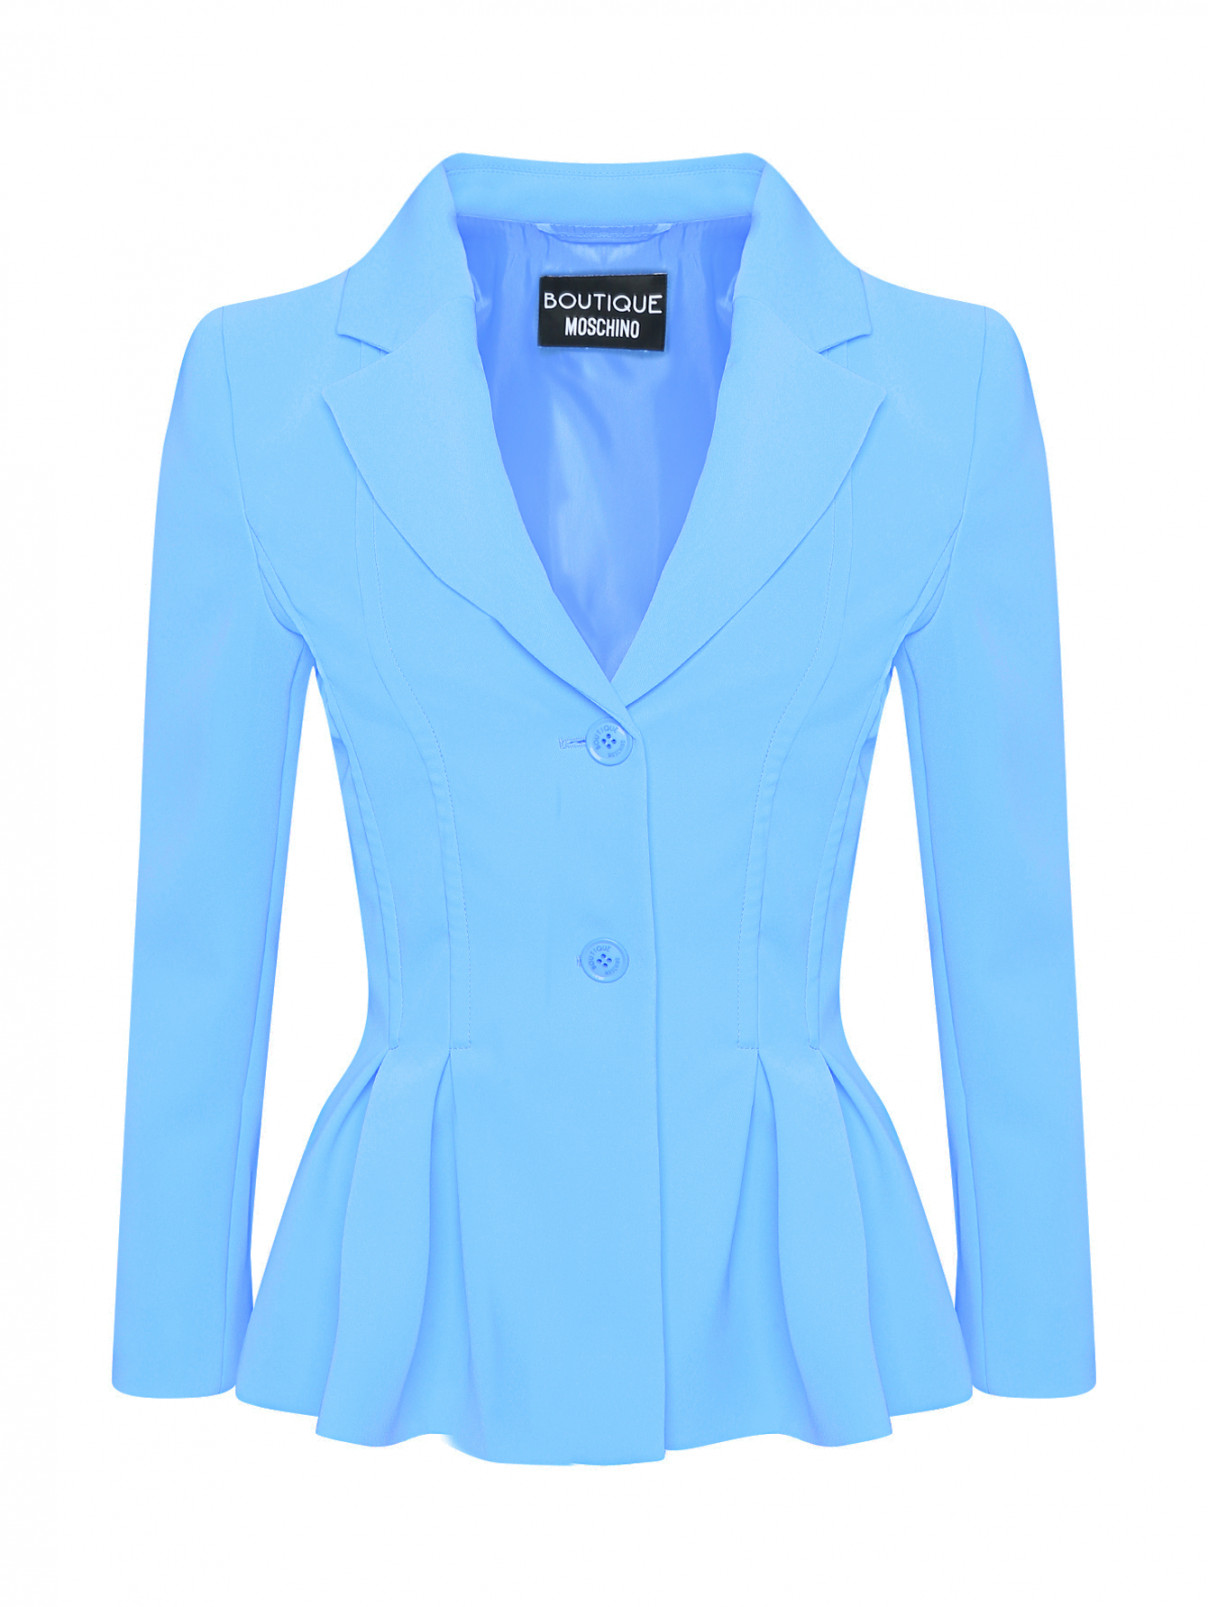 Жакет с защипами Moschino Boutique  –  Общий вид  – Цвет:  Синий